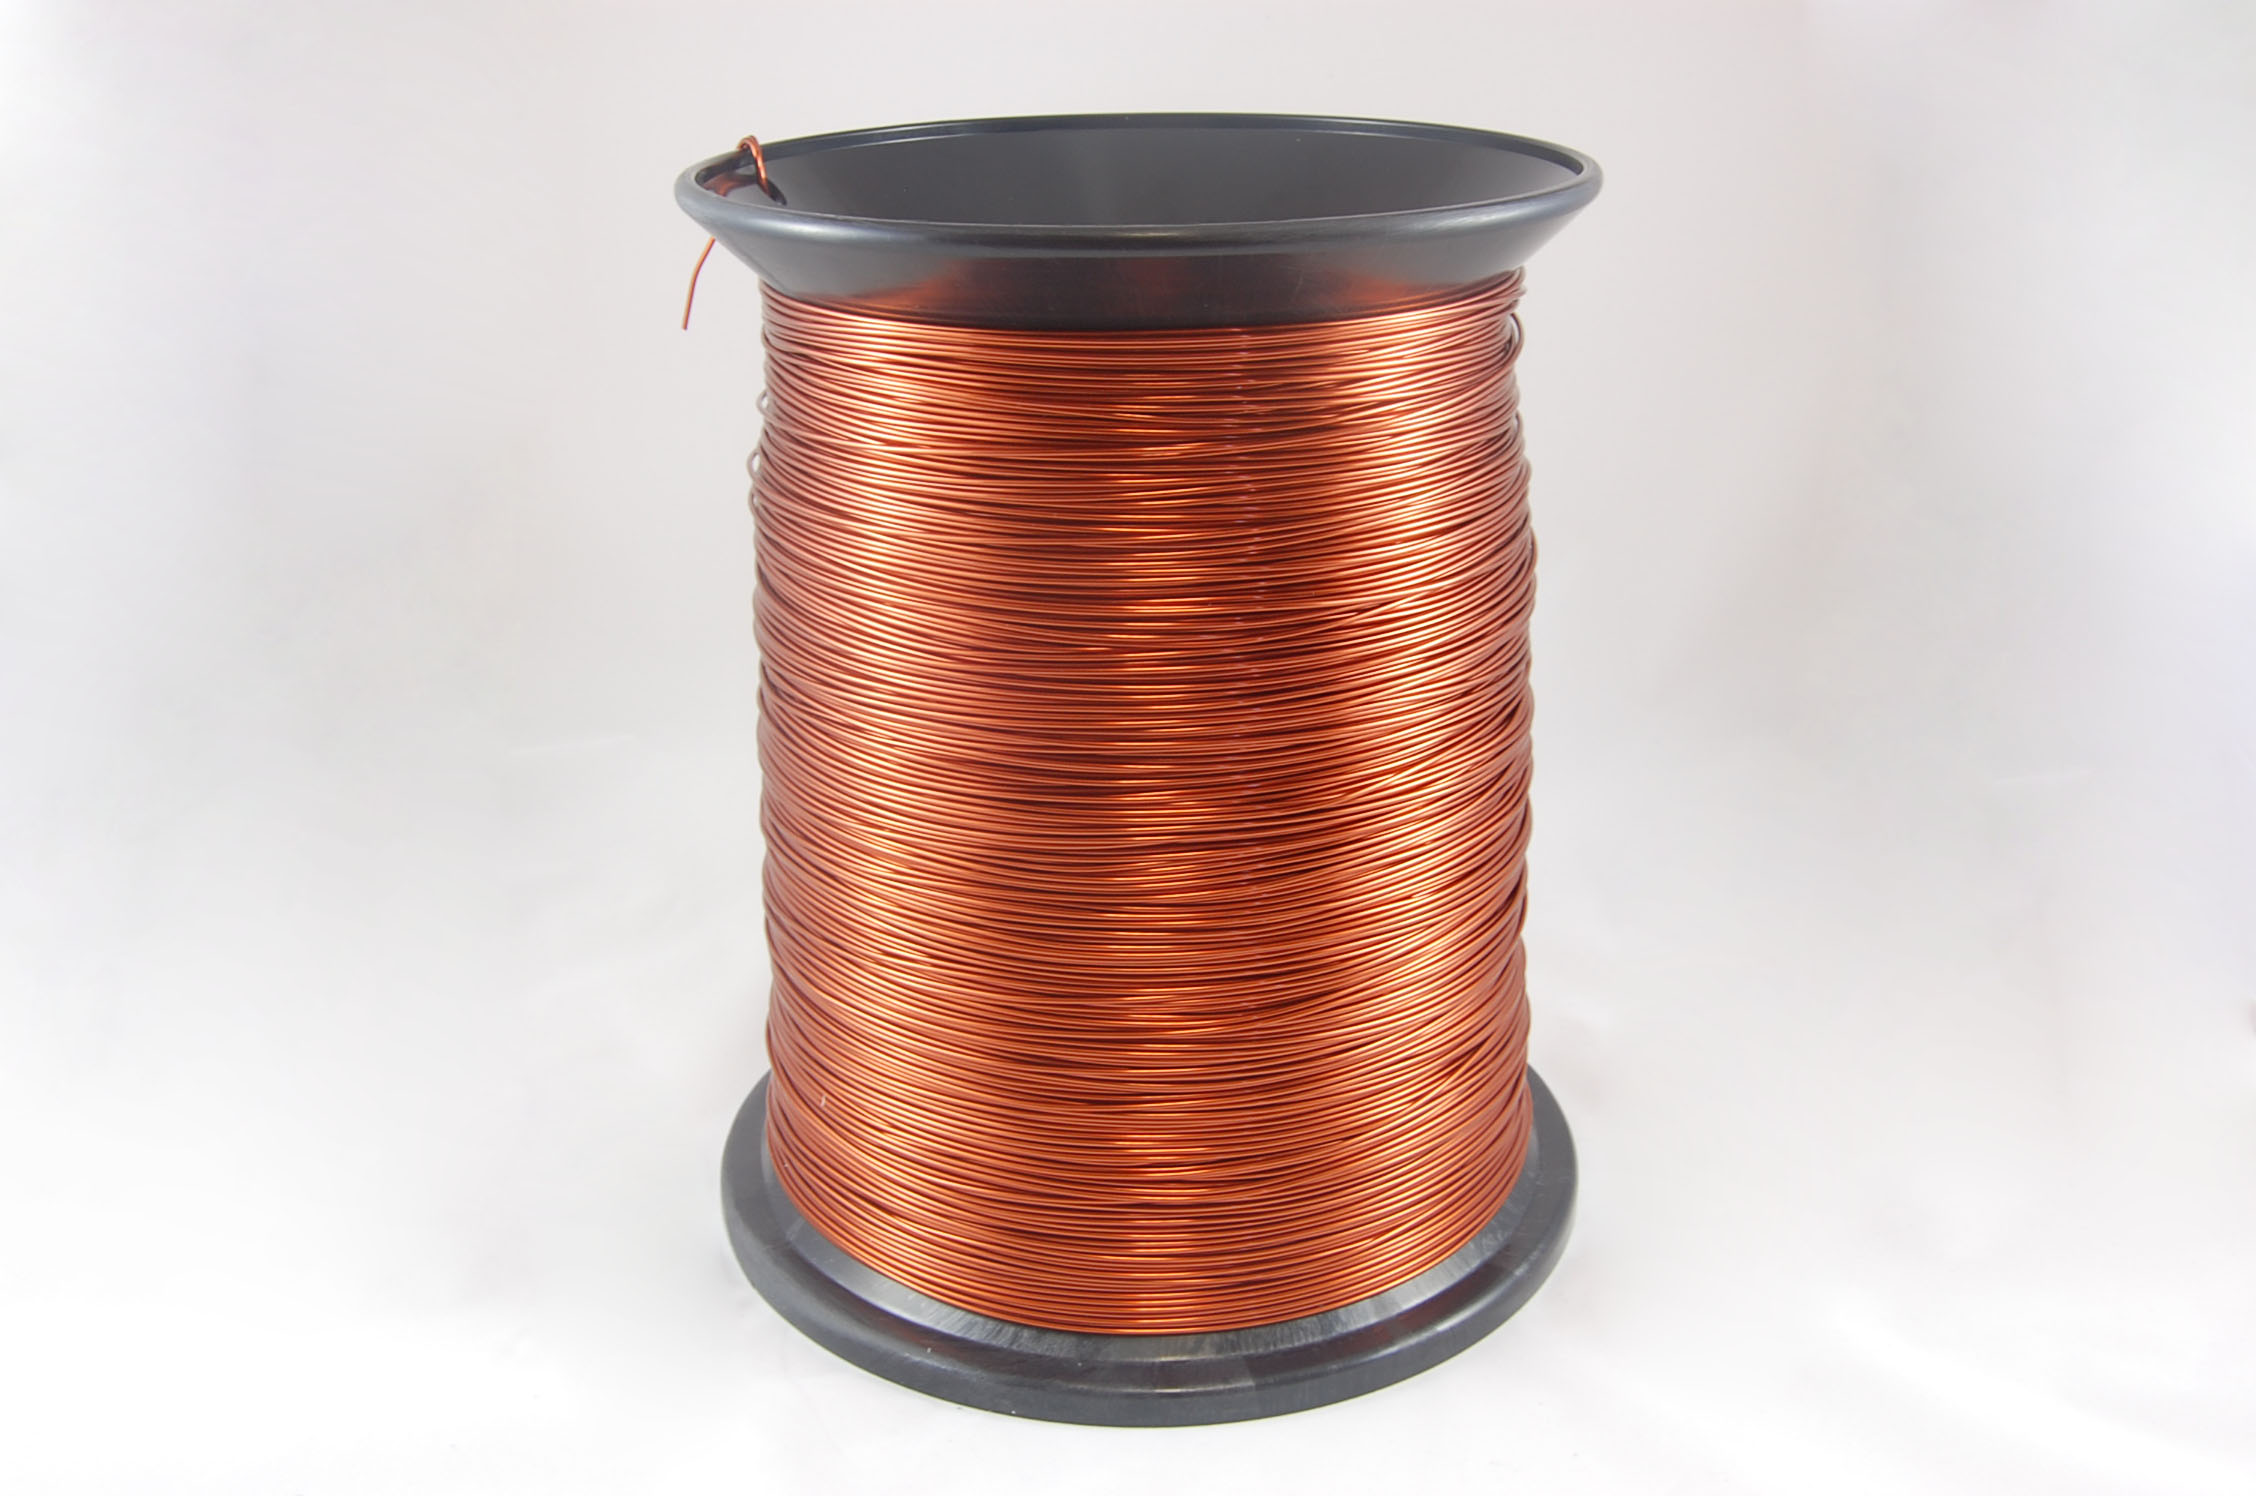 #18 Heavy GP/MR-200 Round MW 35 Copper Magnet Wire 200°C, copper, 85 LB box (average wght.)